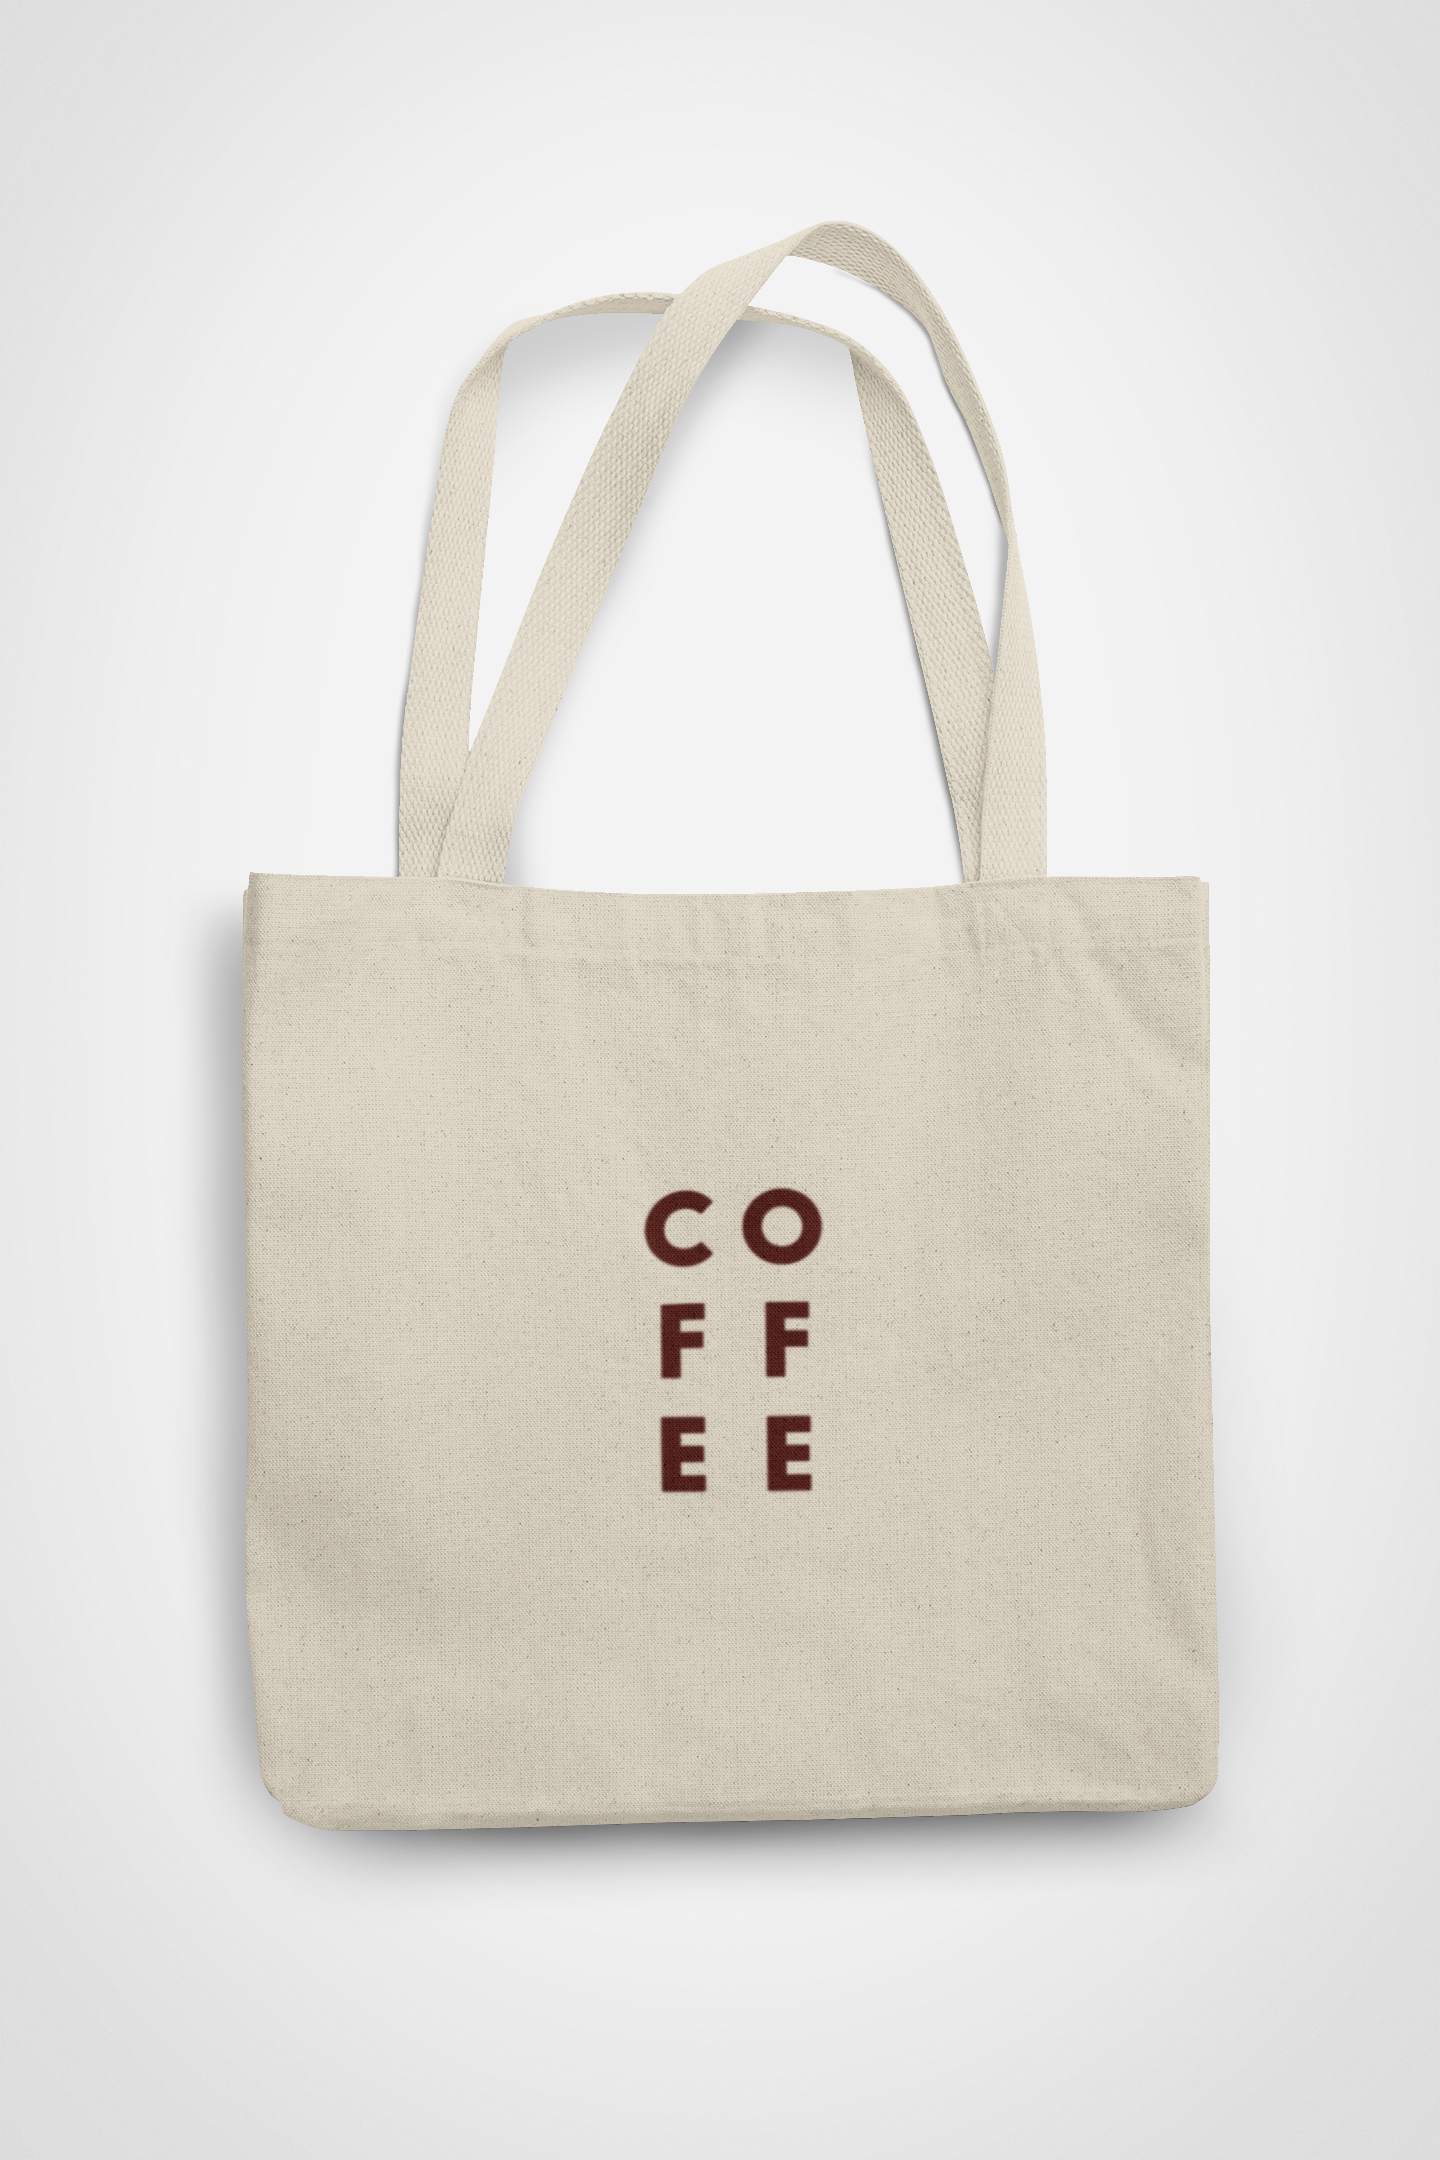 Zipped Tote Bag - Coffee